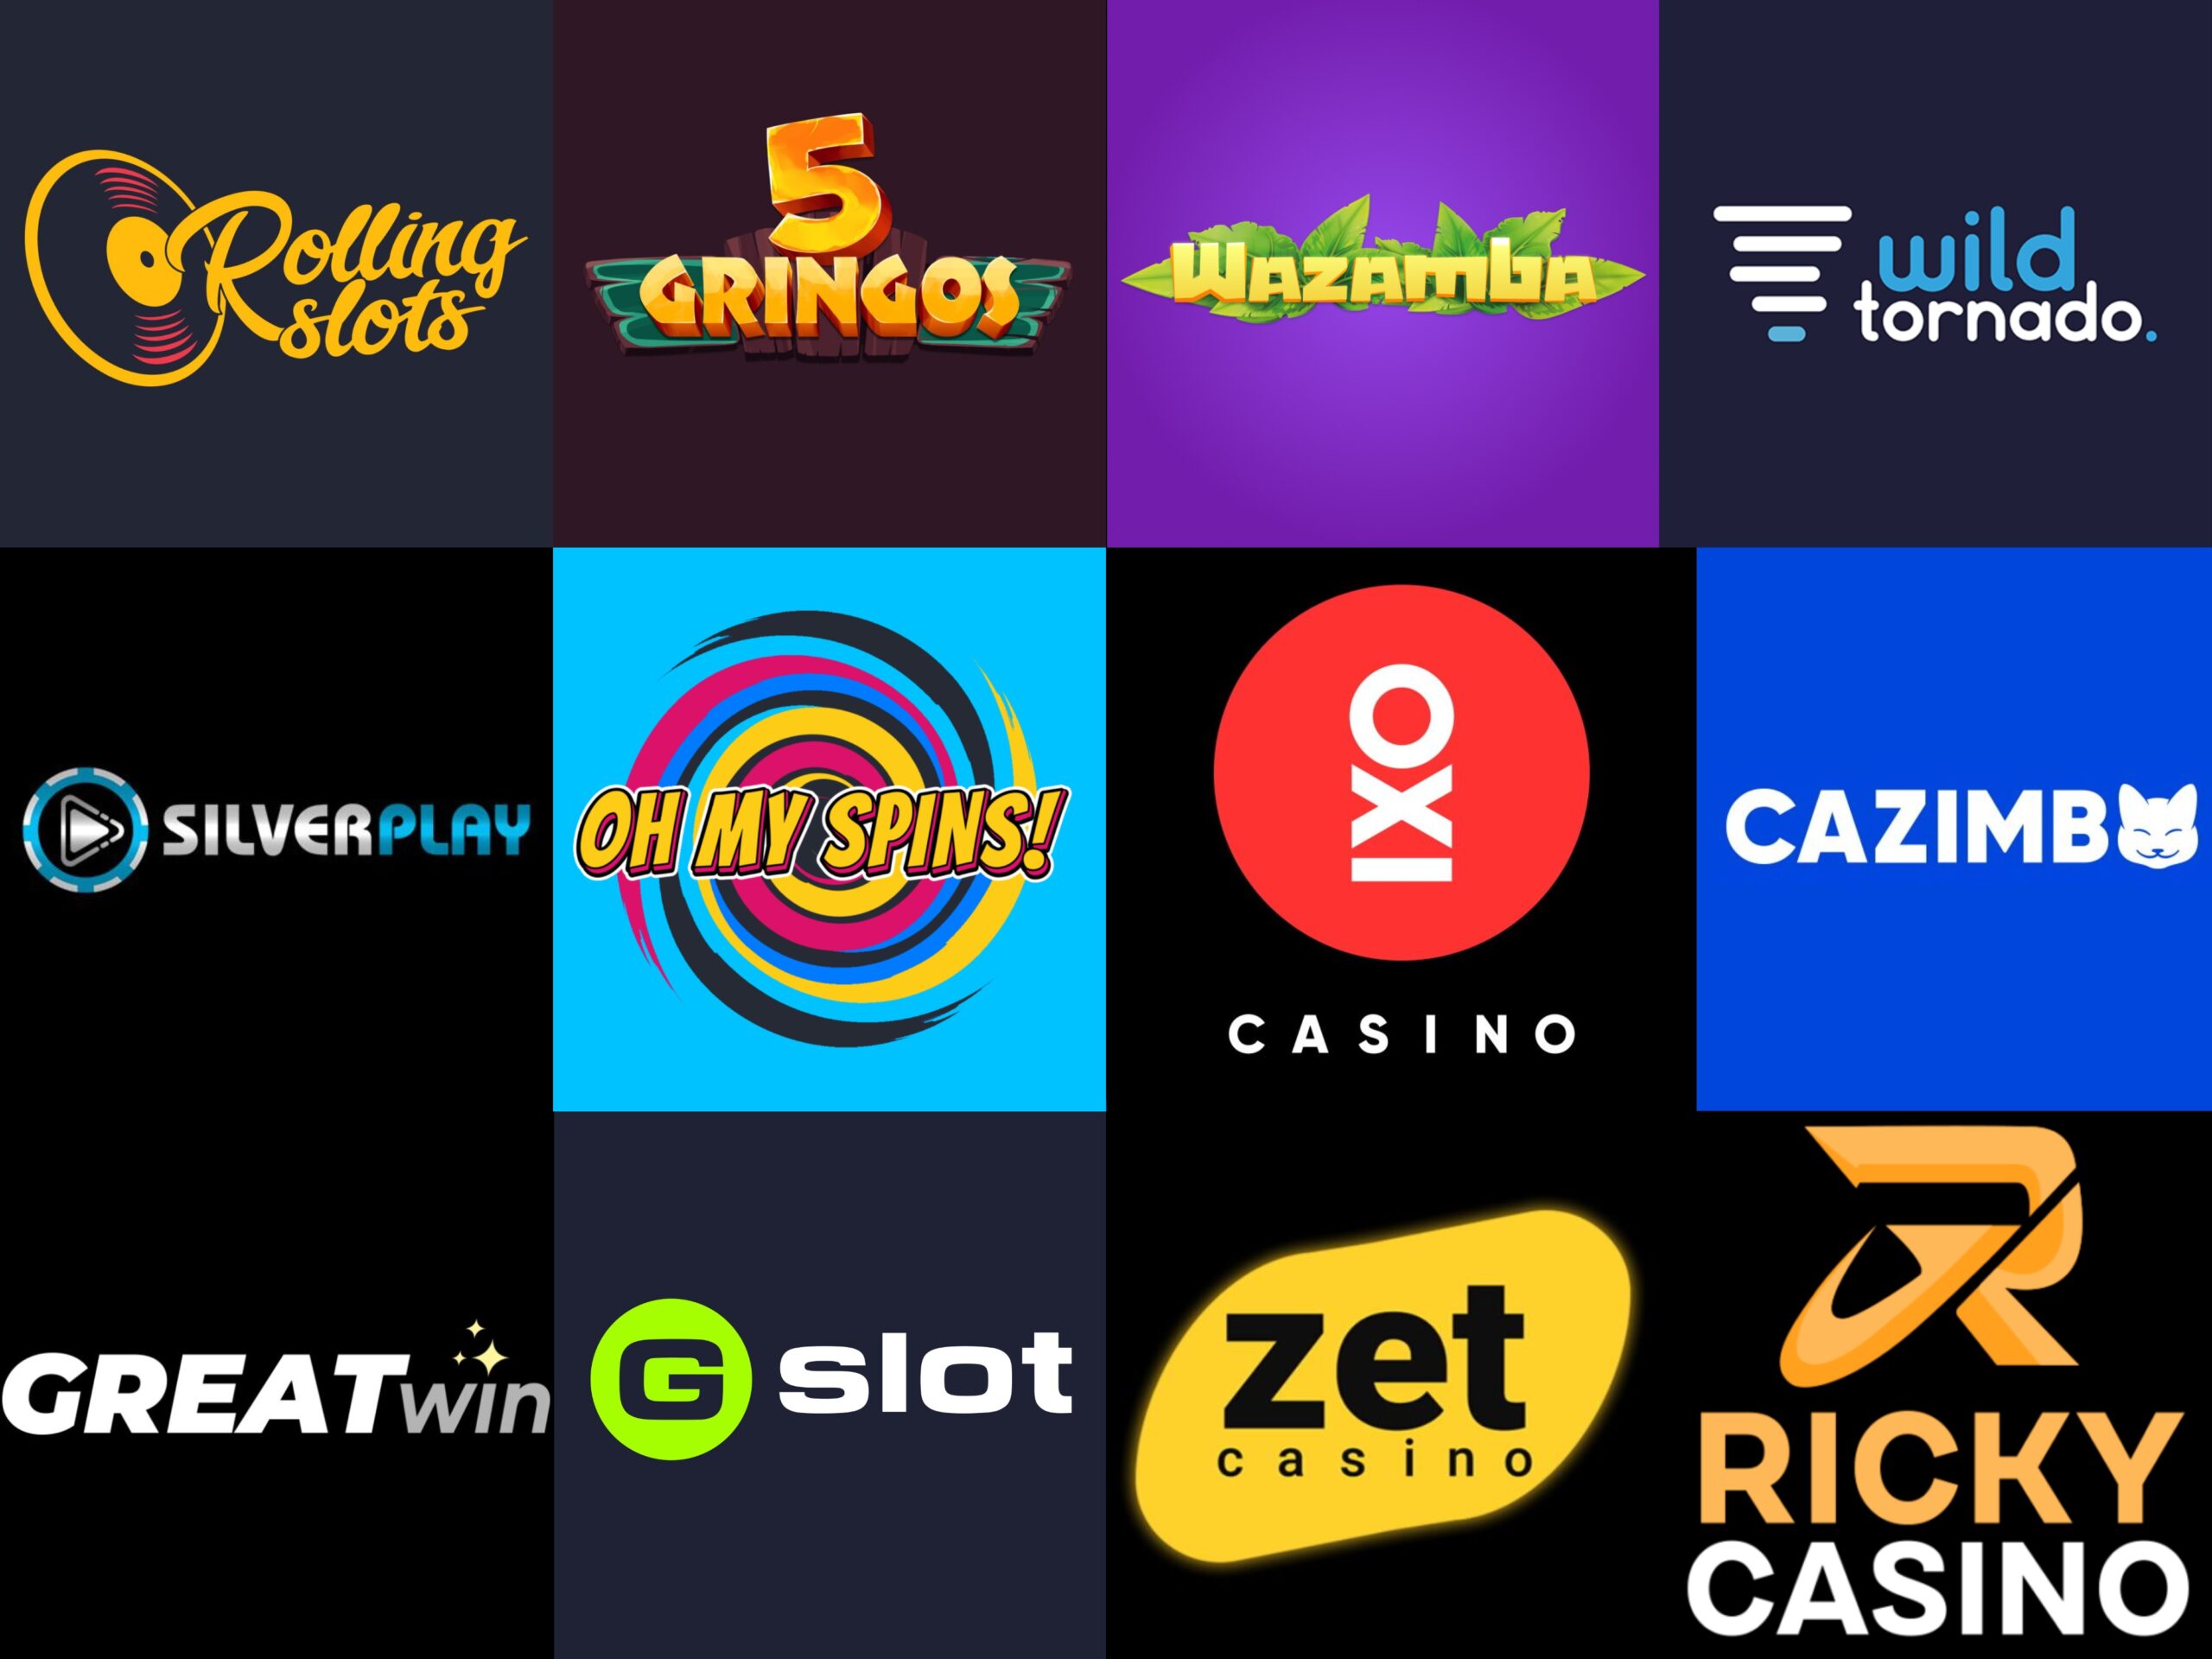 Manche Leute sind mit Seriöse Online Casino ausgezeichnet und manche nicht - Welcher bist du?